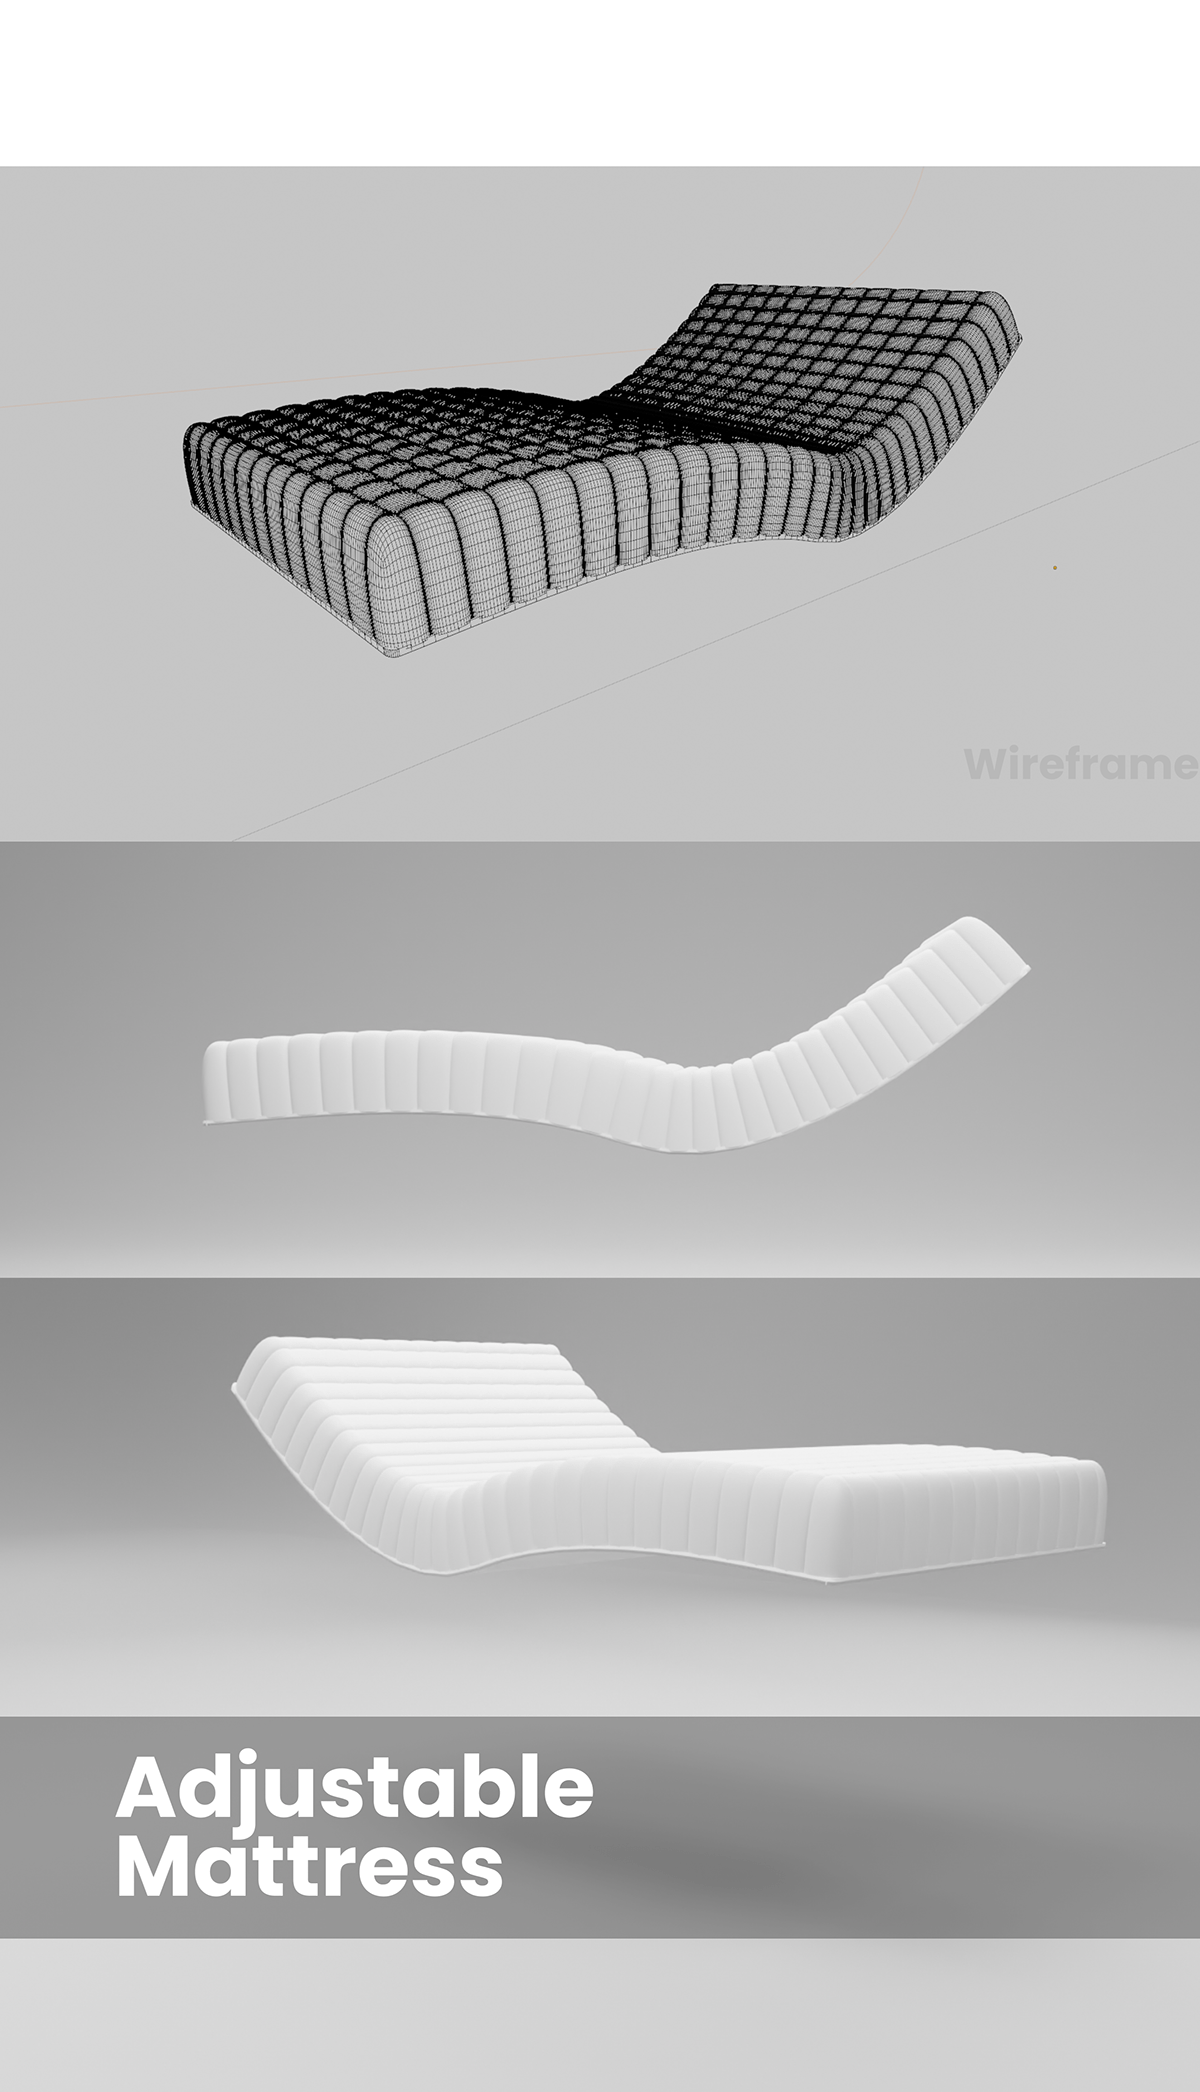 3D 3d modeling architecture blender furniture furniture design  modern product product design  Render